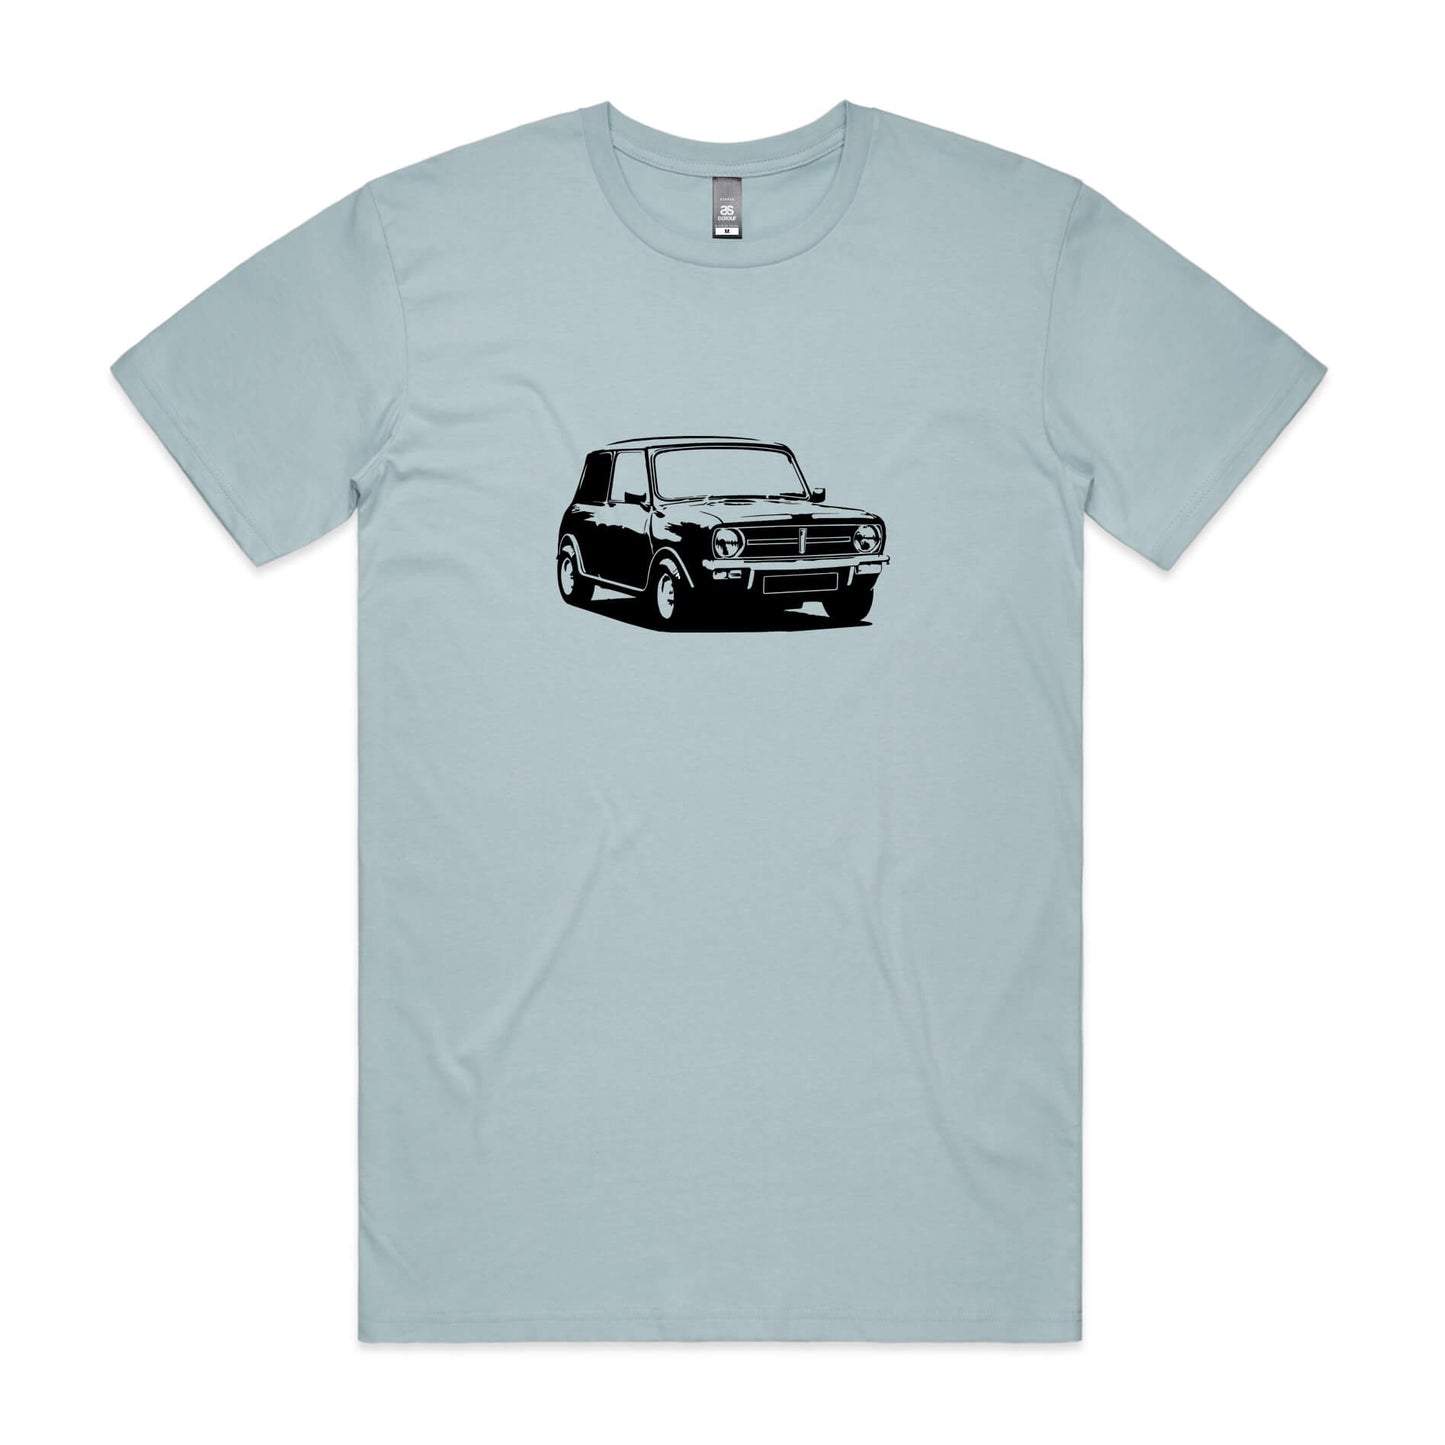 Mini Clubman T-Shirt